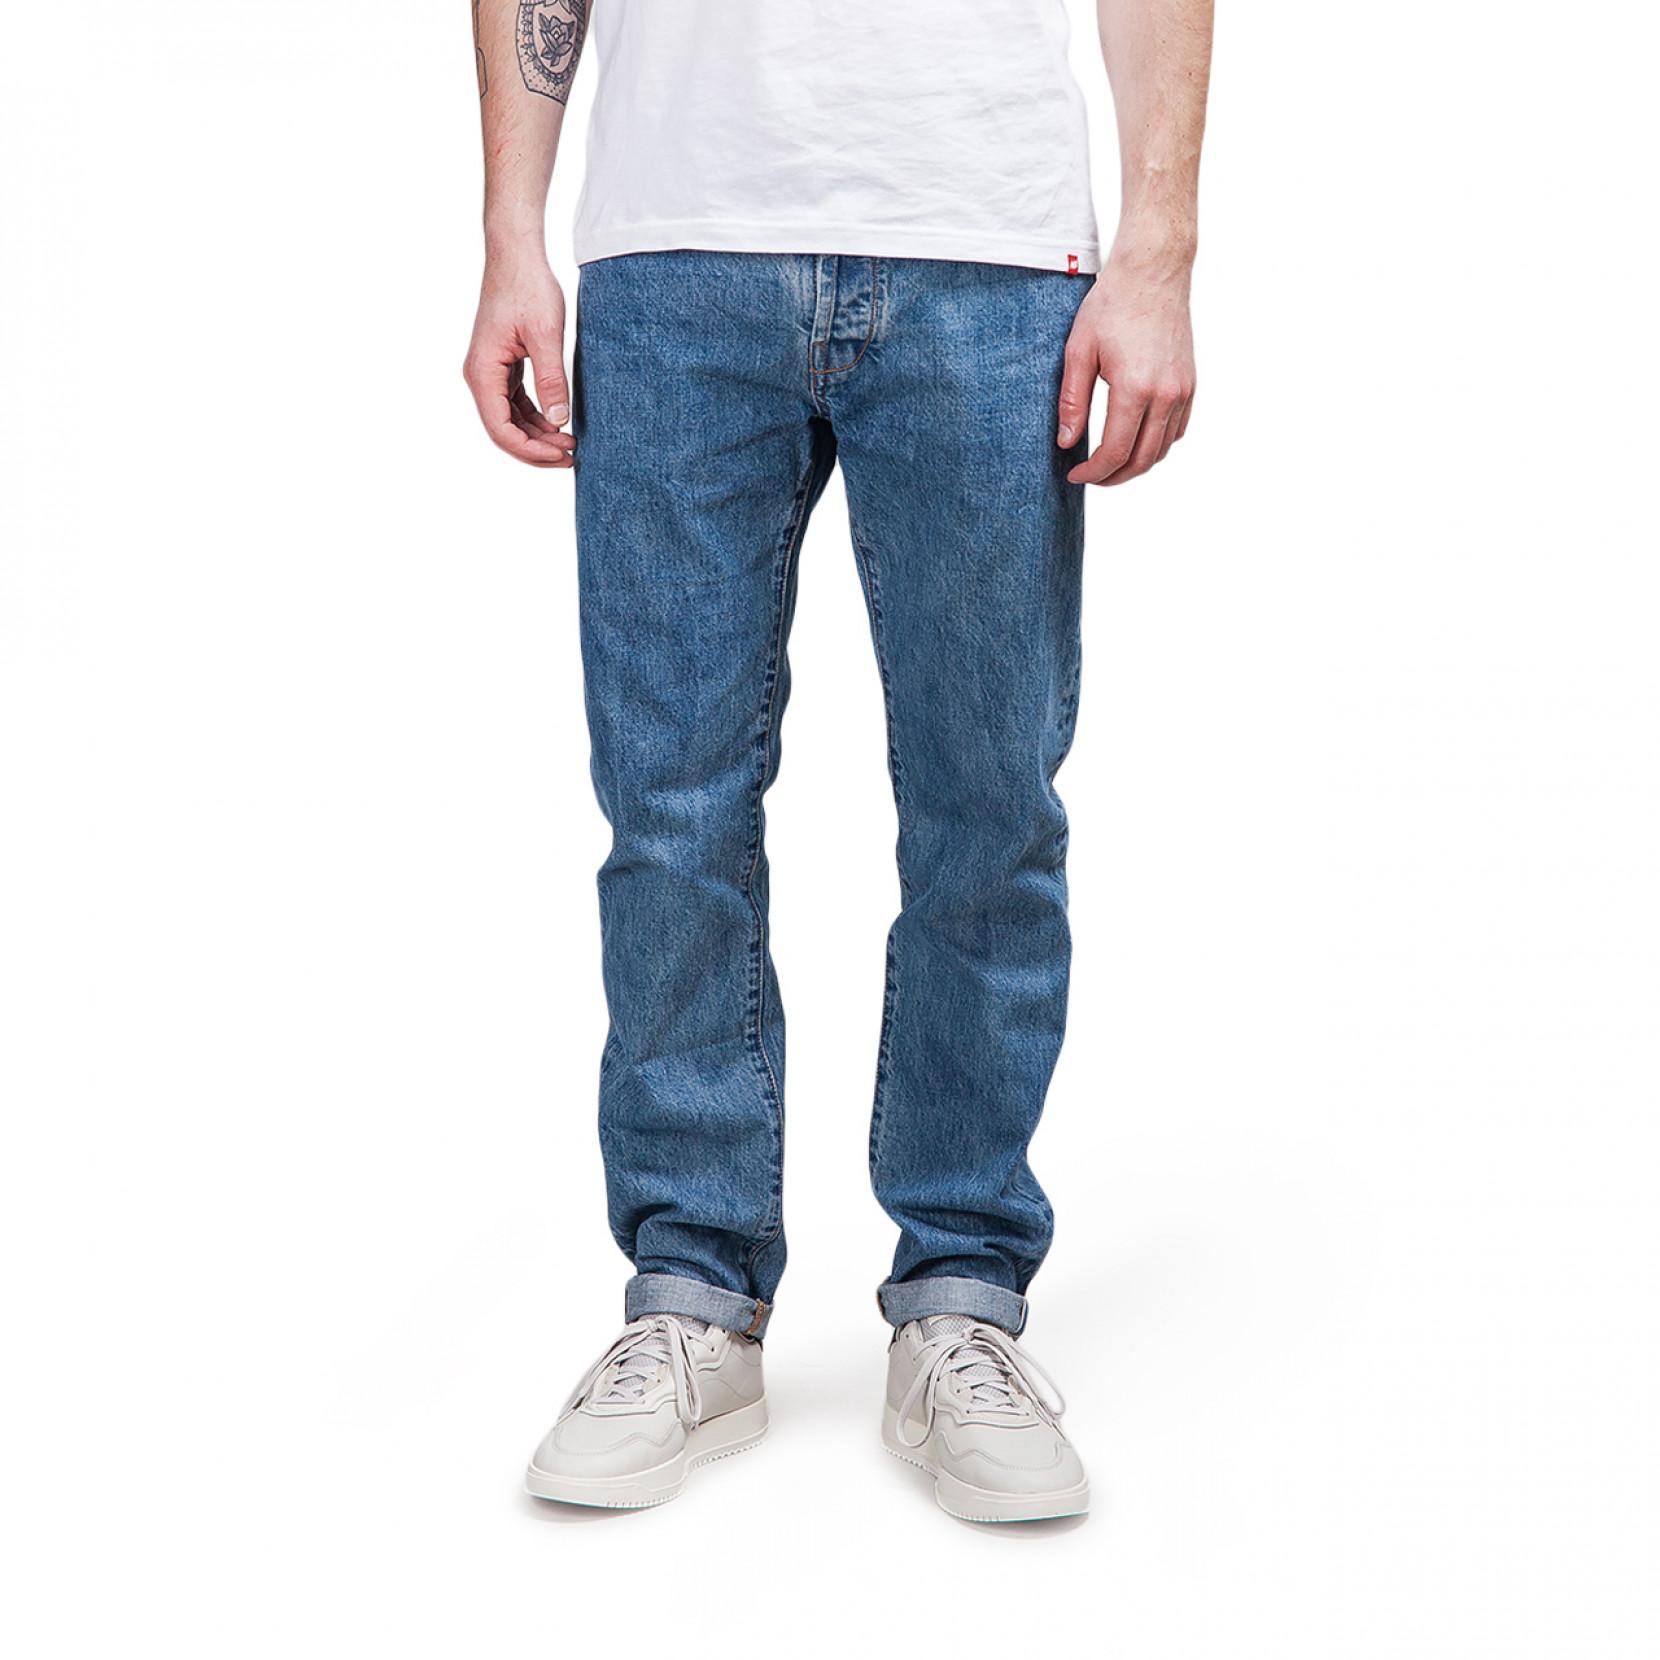 Han Kjobenhavn Denim Tapered Jeans in Blue for Men - Lyst